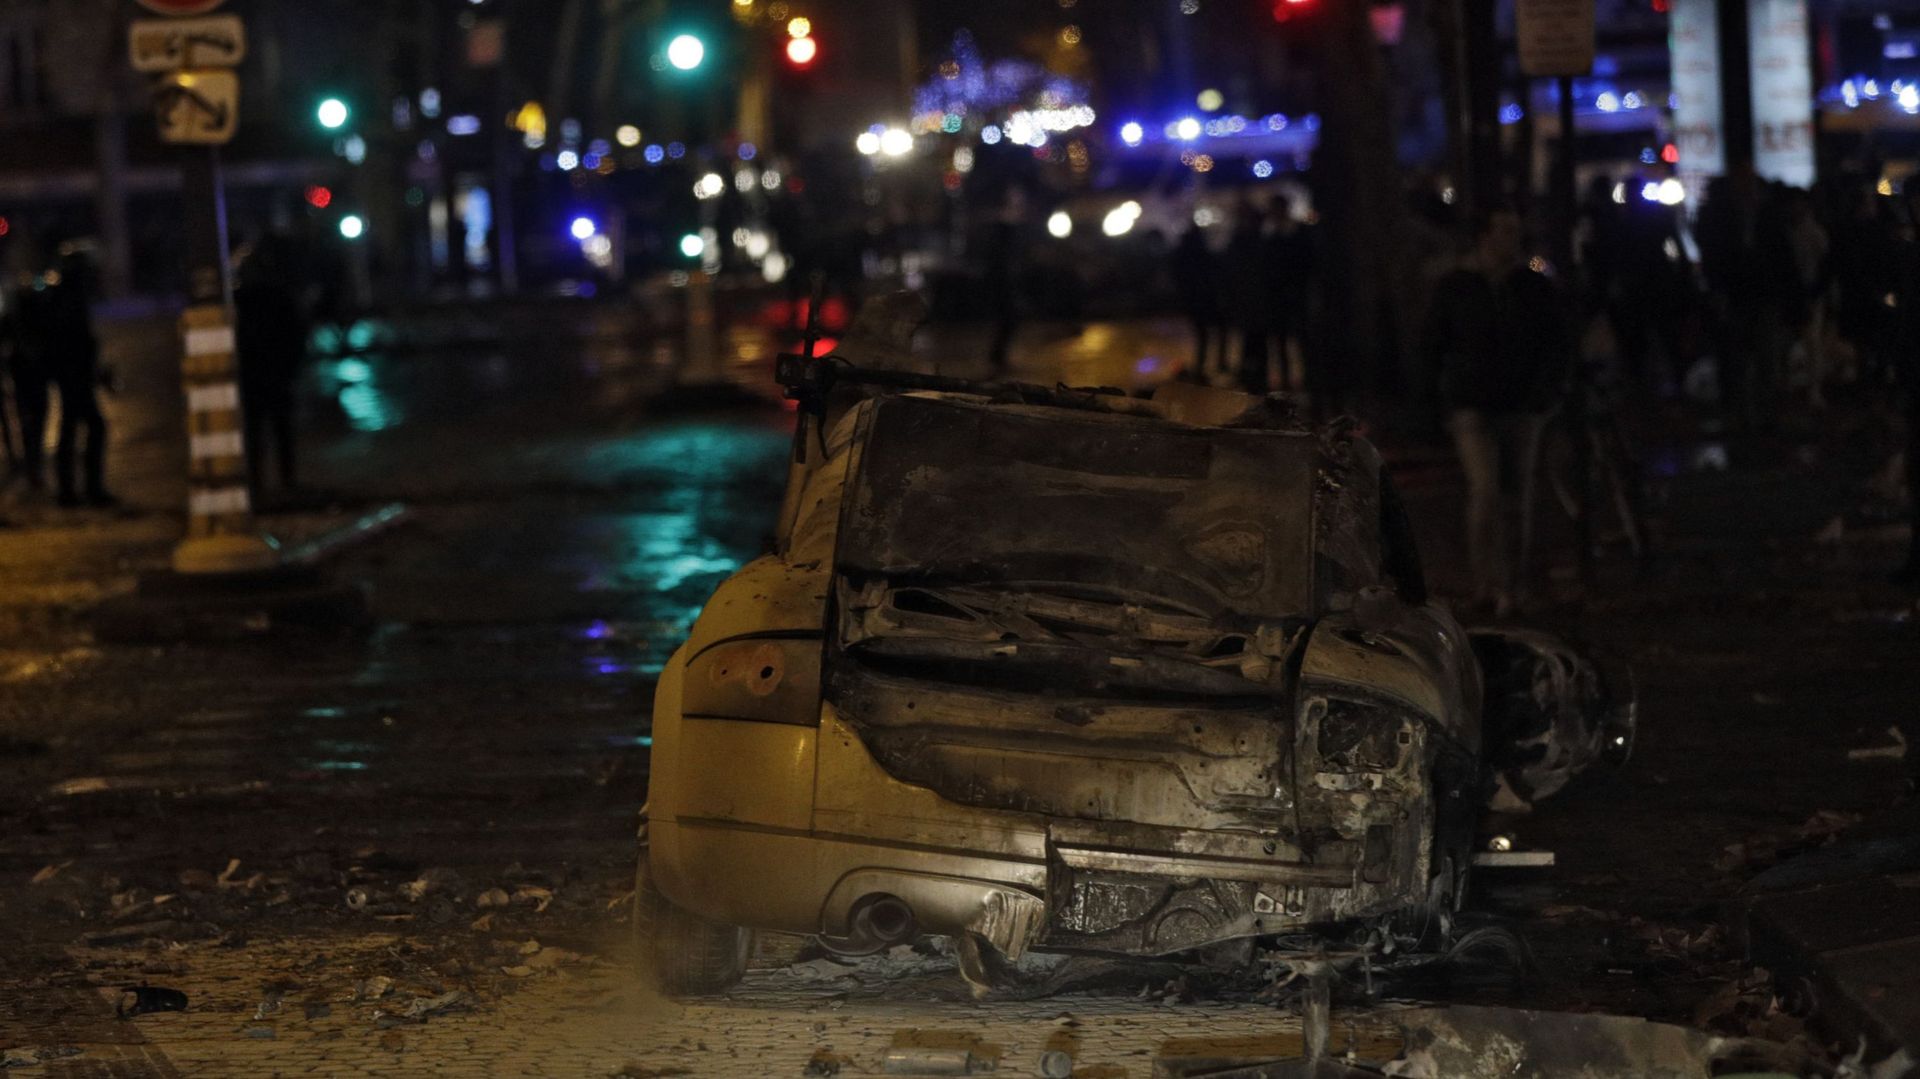 Voitures incendiées, vitrines brisées: les images de Paris au lendemain d'une journée de violences